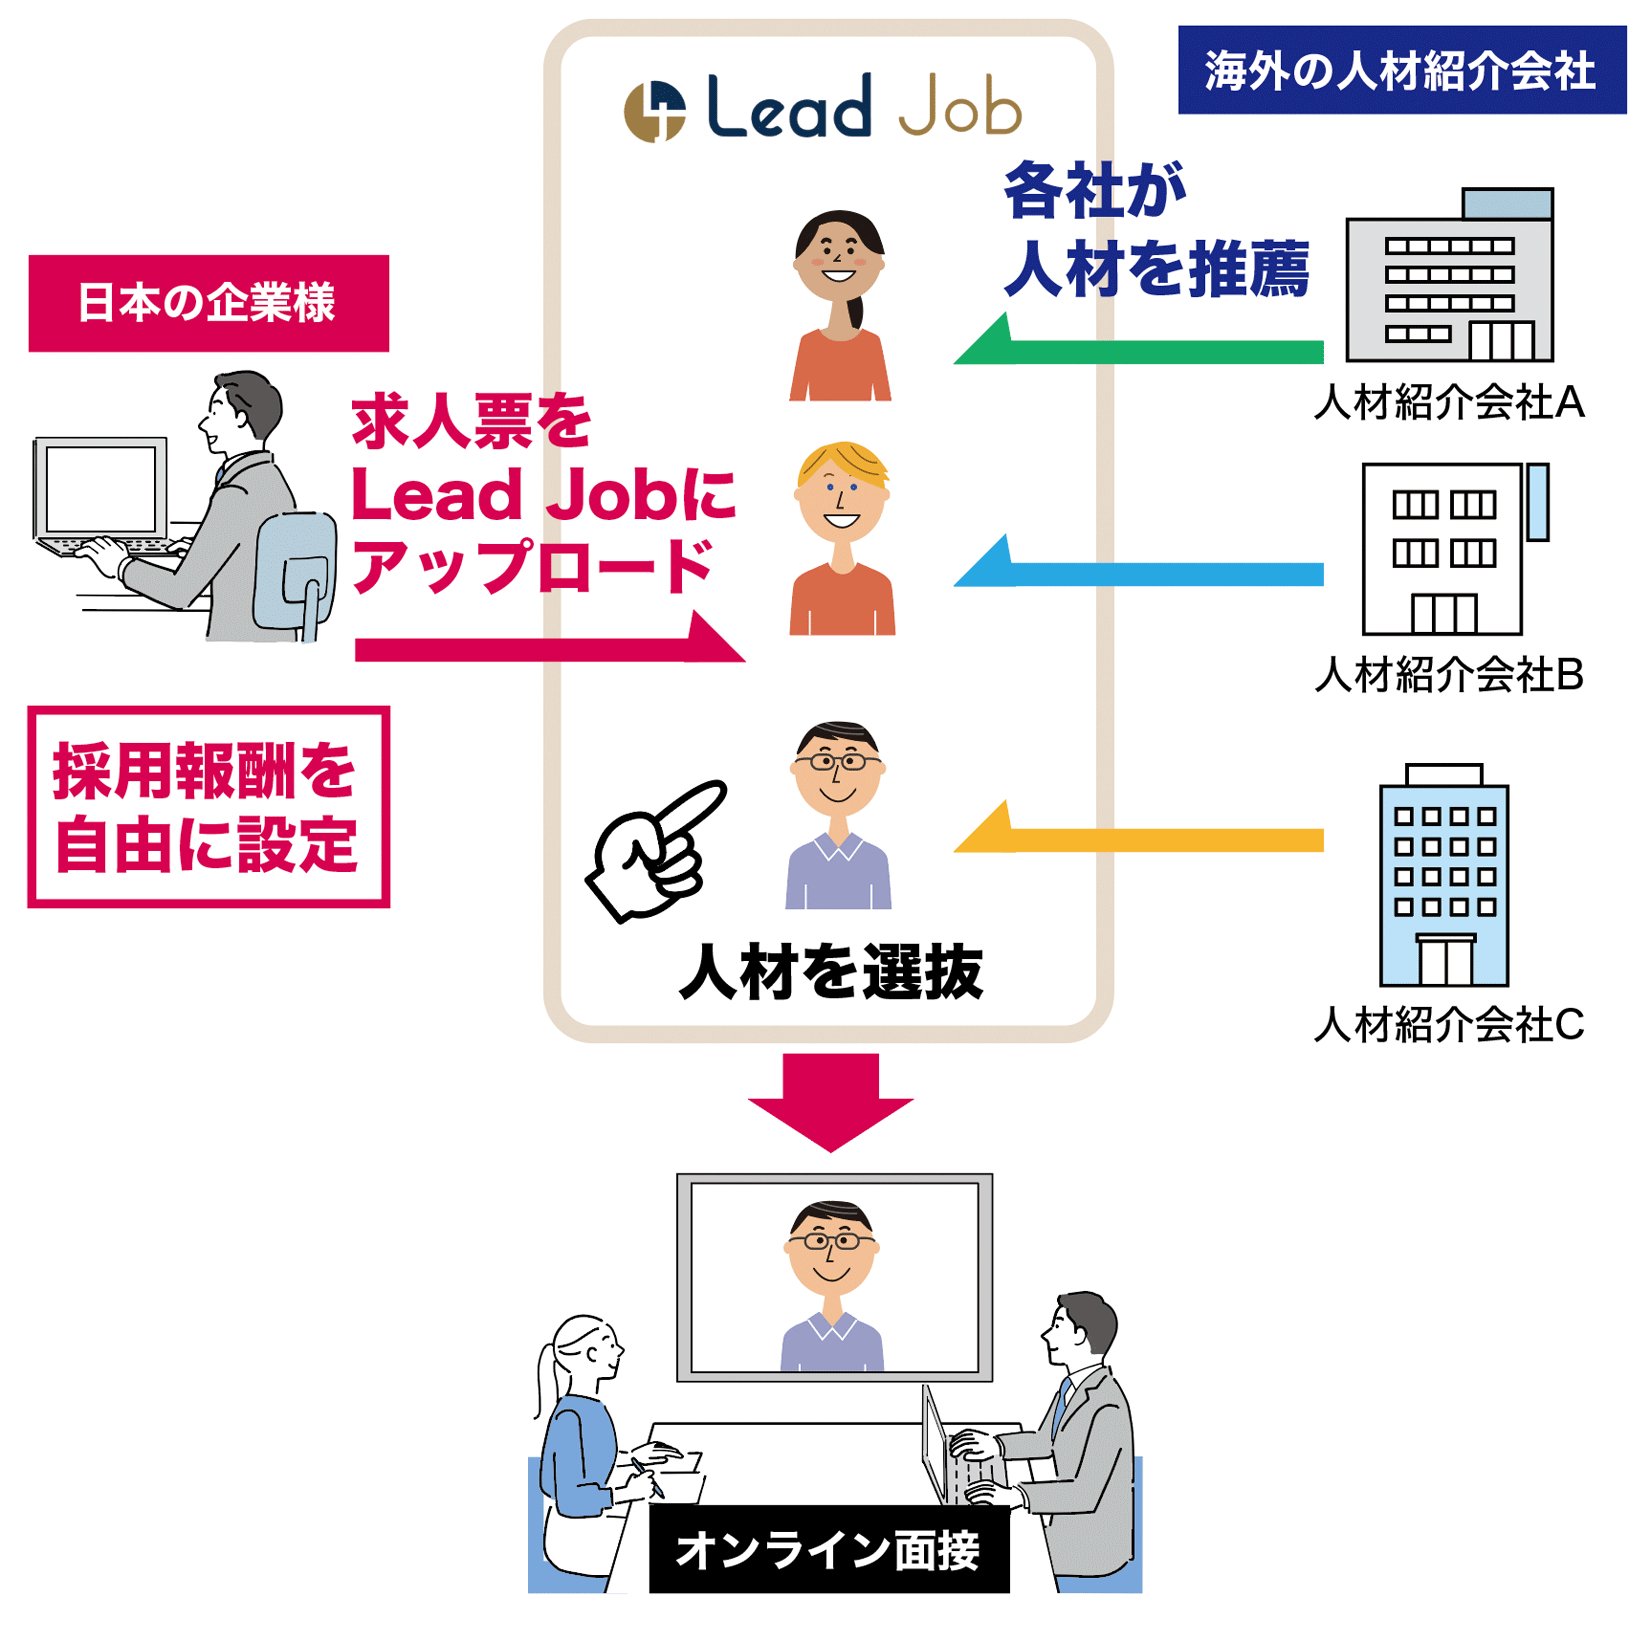 日本初の越境型B to Bリクルーティングを可能としており、企業様が海外人材エージェントが推薦する理系人材を選ぶことできる上、採用報酬が自由に設定できる画期的な完全成功報酬型エージェントマッチングシステムです。